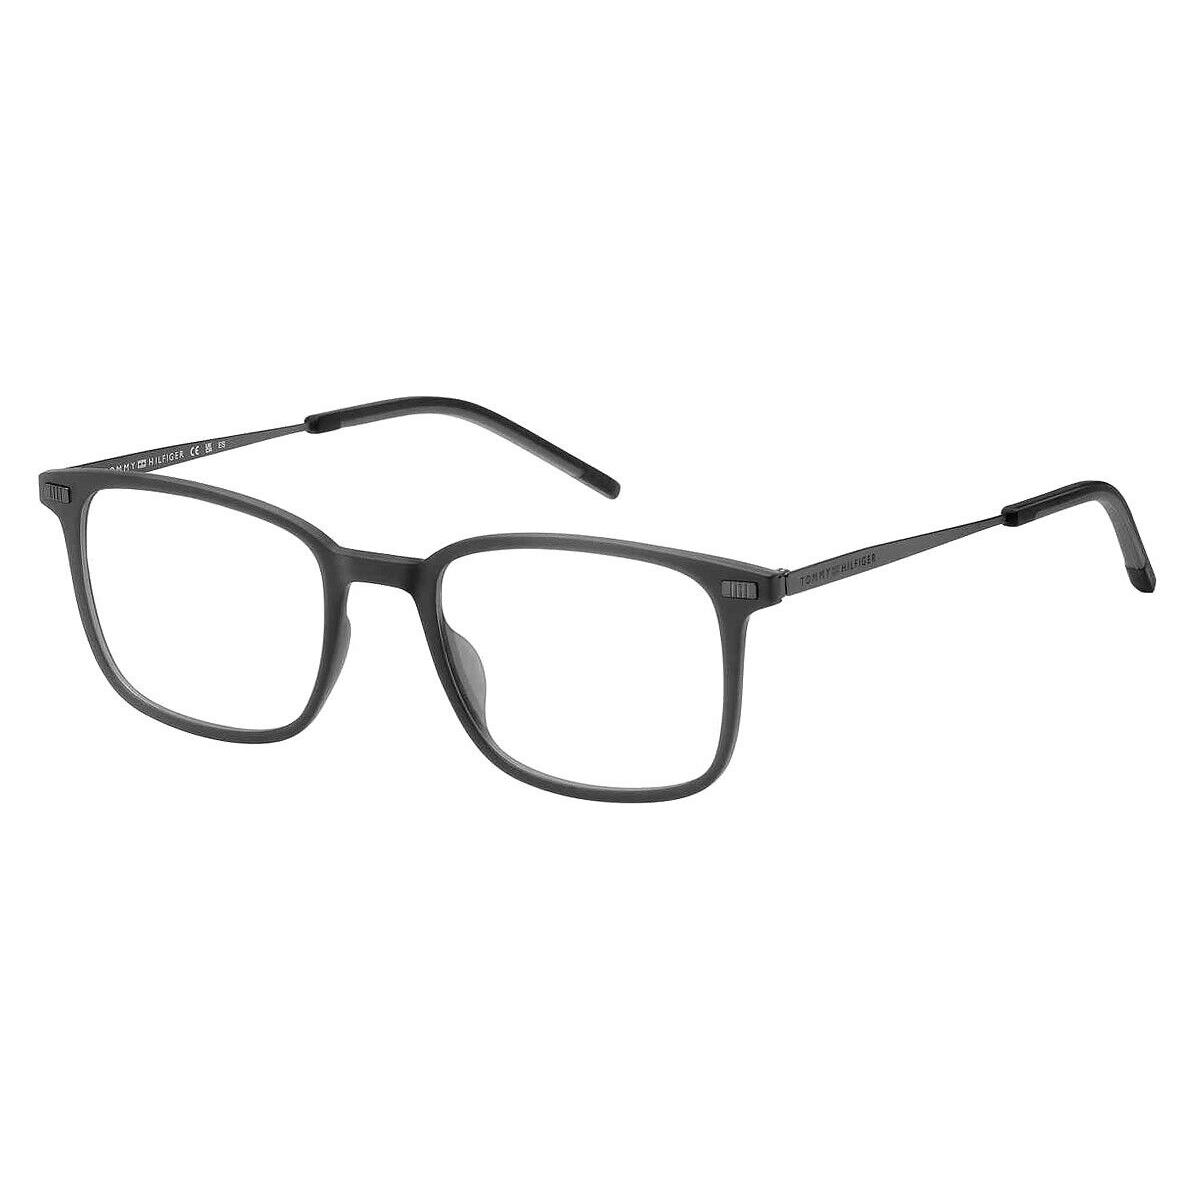 Tommy Hilfiger Thf Eyeglasses Men Matte Gray 50mm - Frame: Matte Gray, Lens: Demo